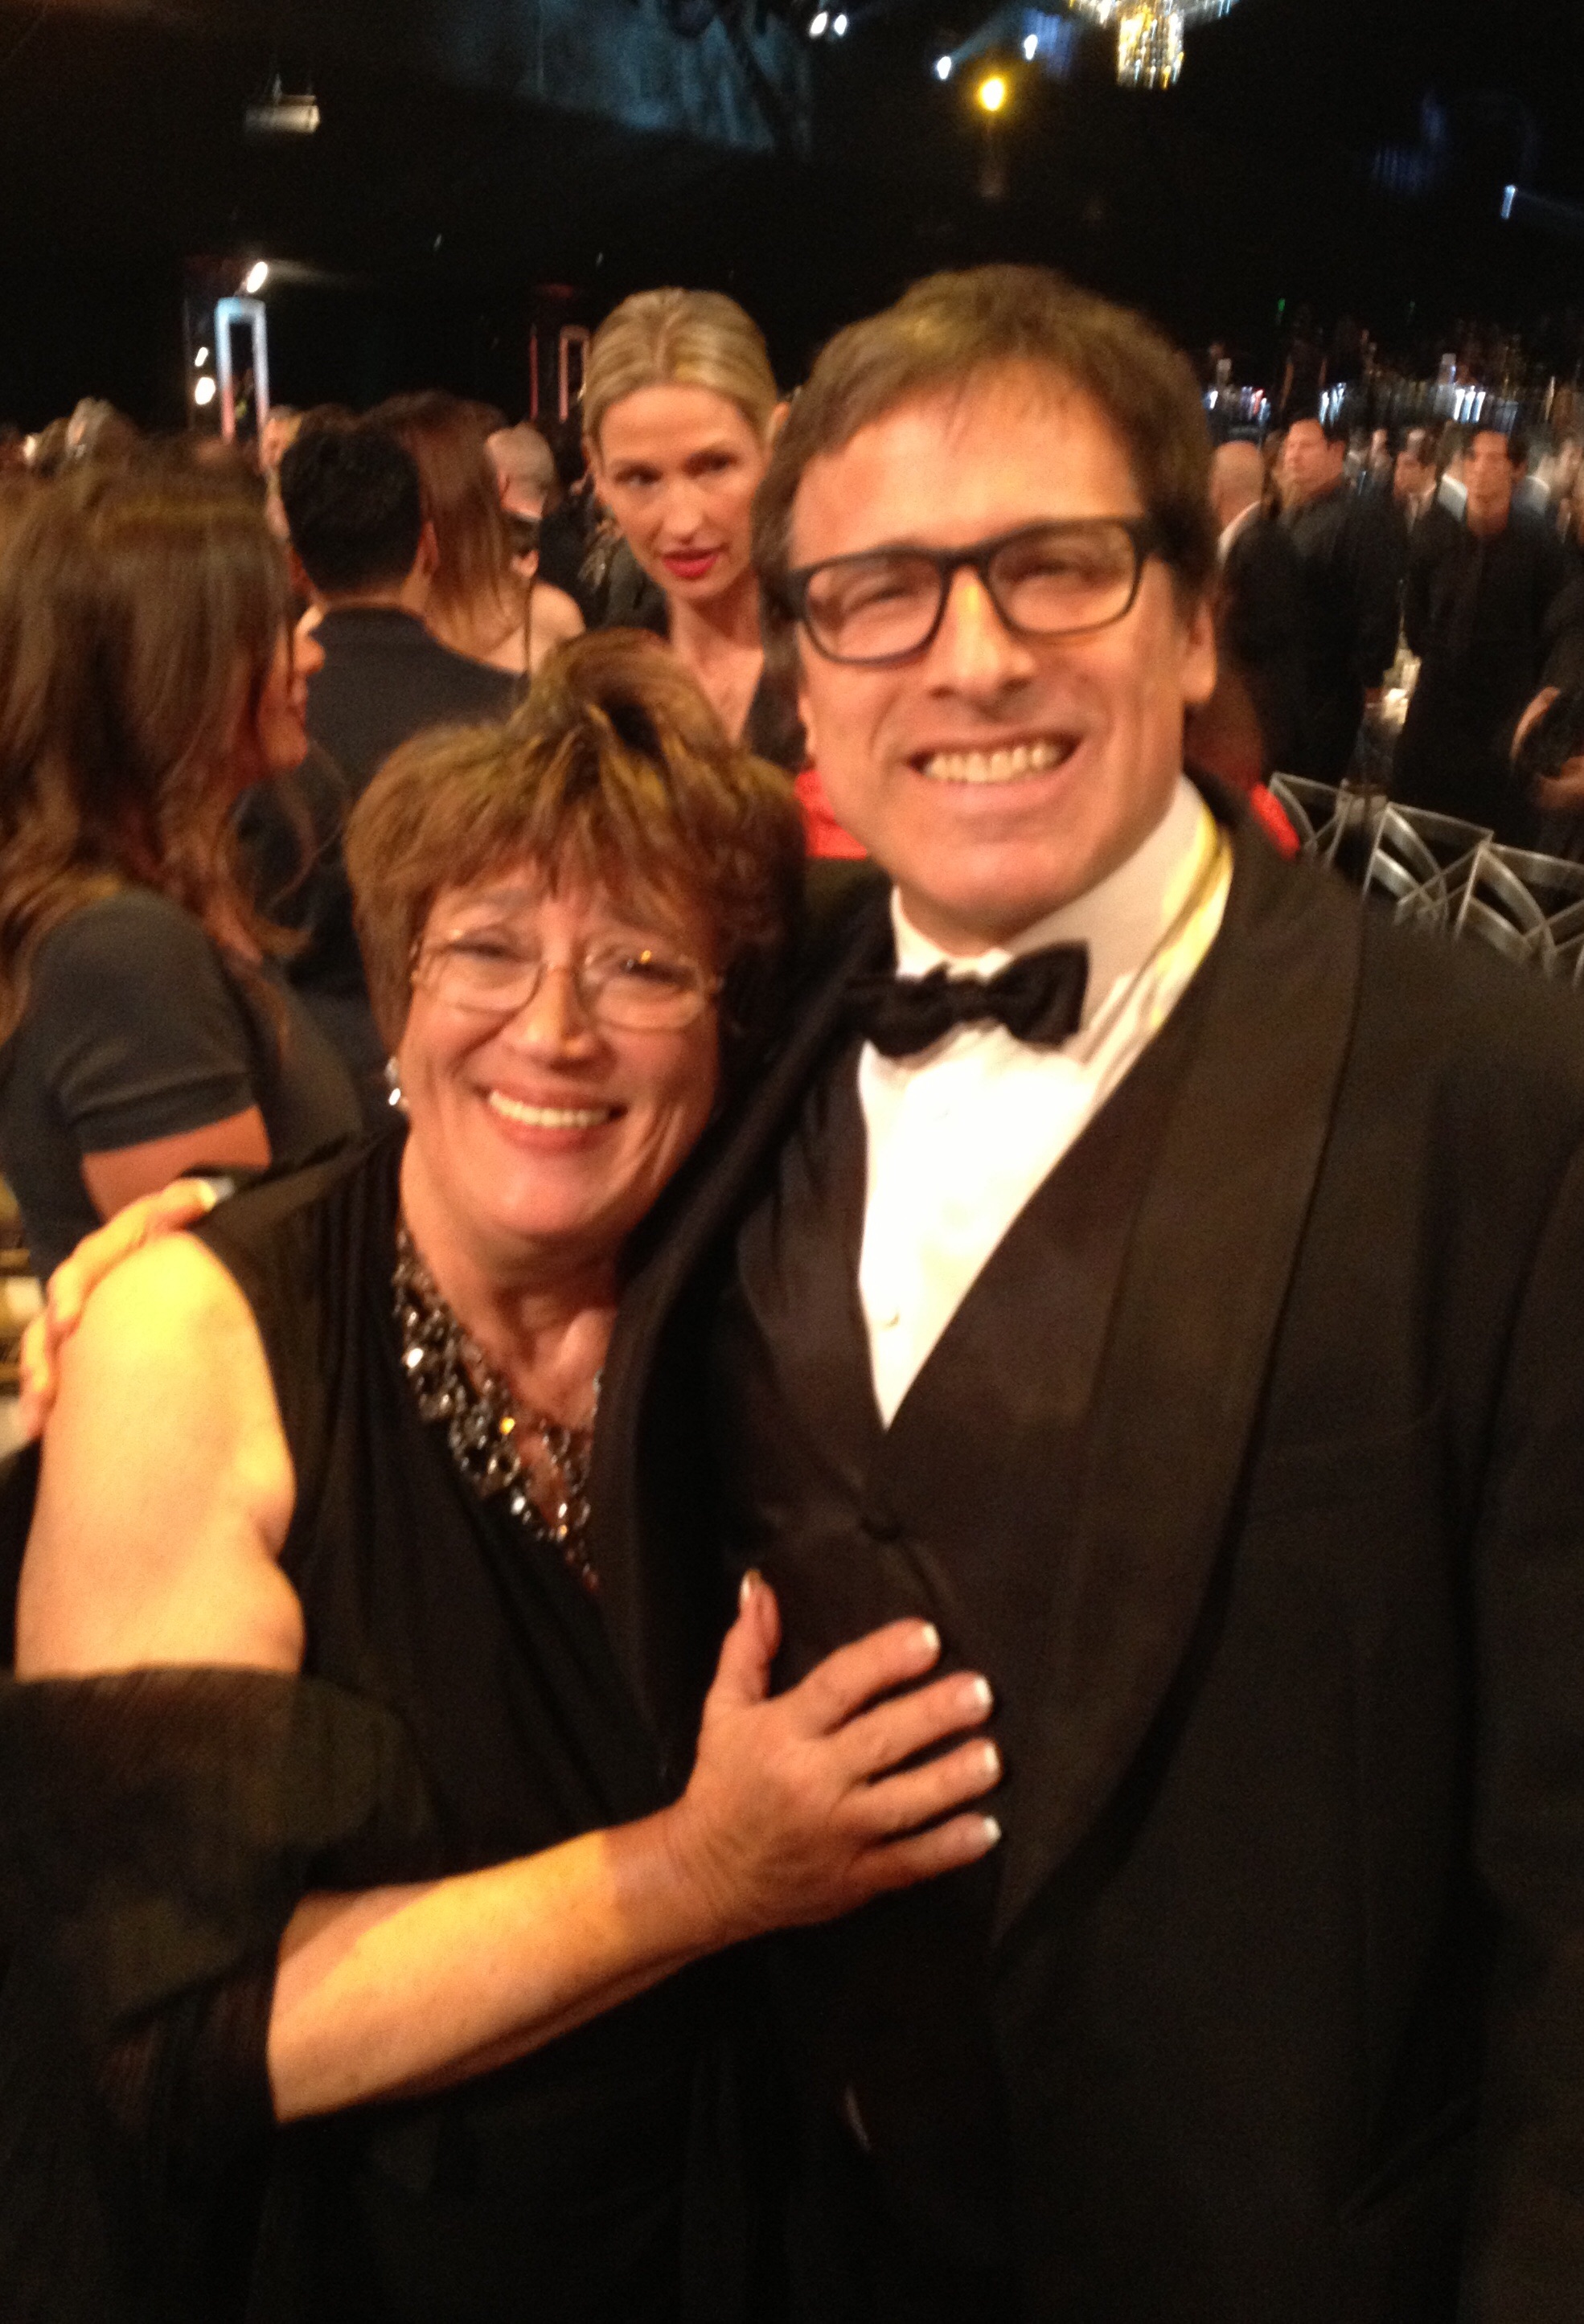 Patsy Meck with director David O. Russell at SAG Awards 2014